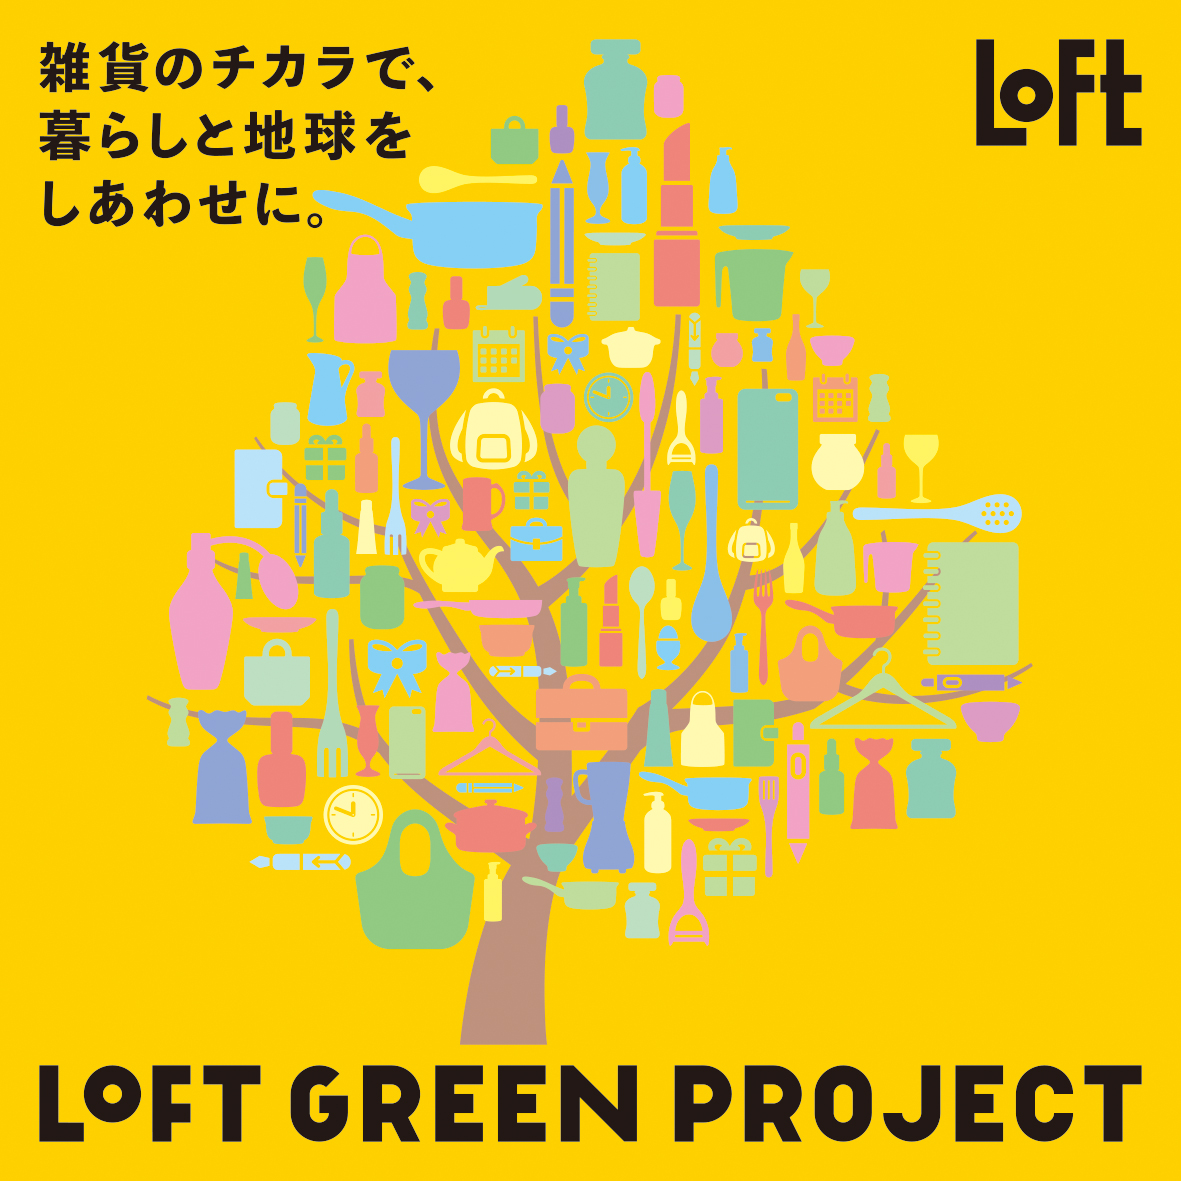 LOFT GREEN PROJECT「雑貨のチカラで、暮らしと地球をしあわせに。」